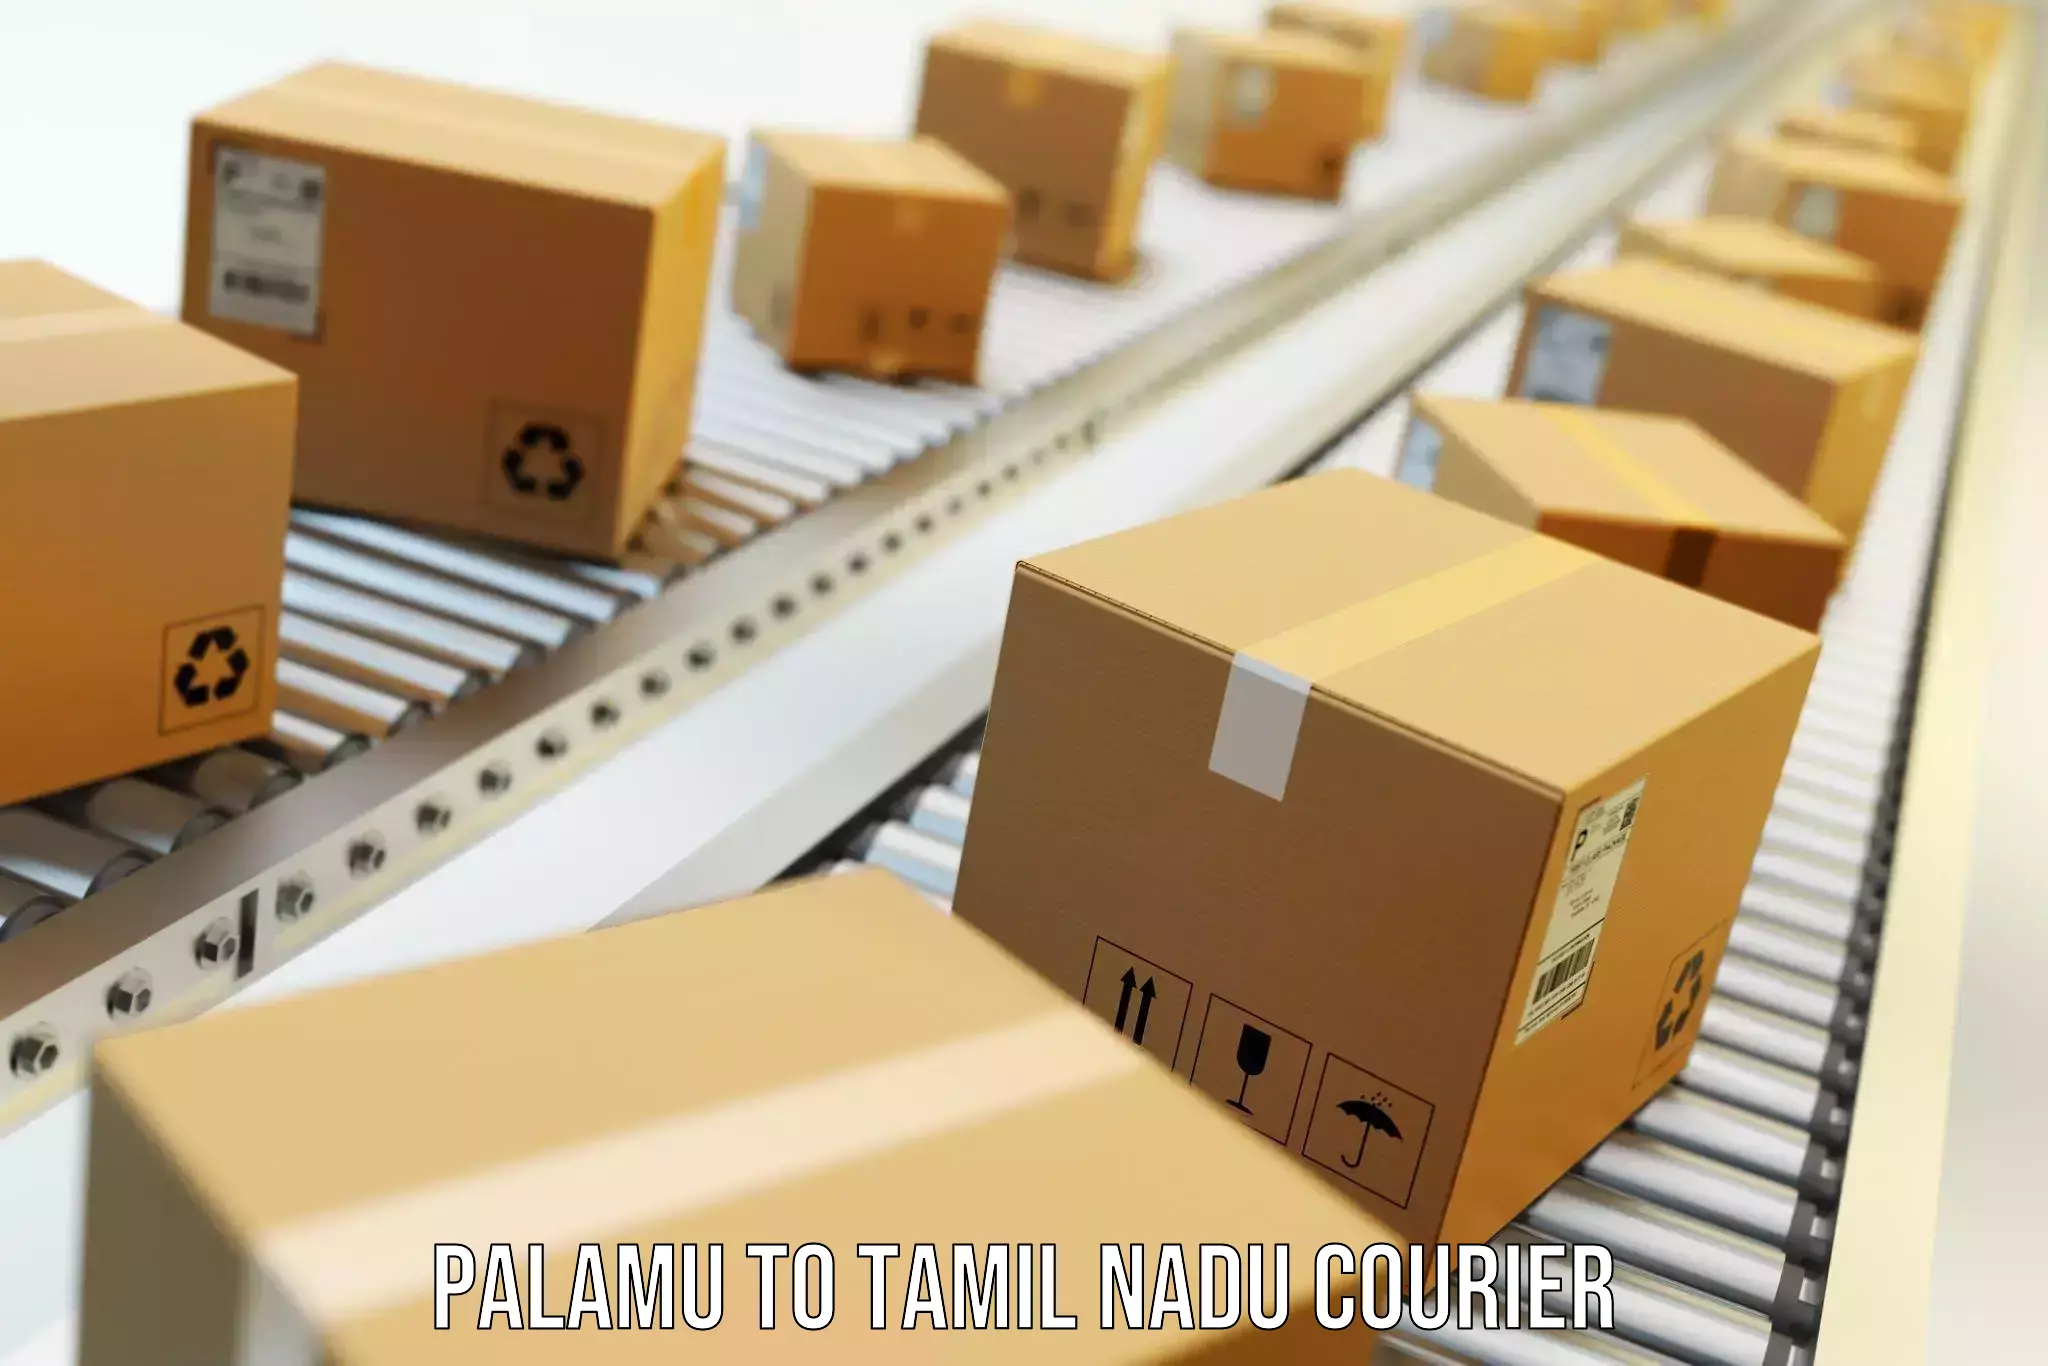 Furniture moving service Palamu to Tamil Nadu